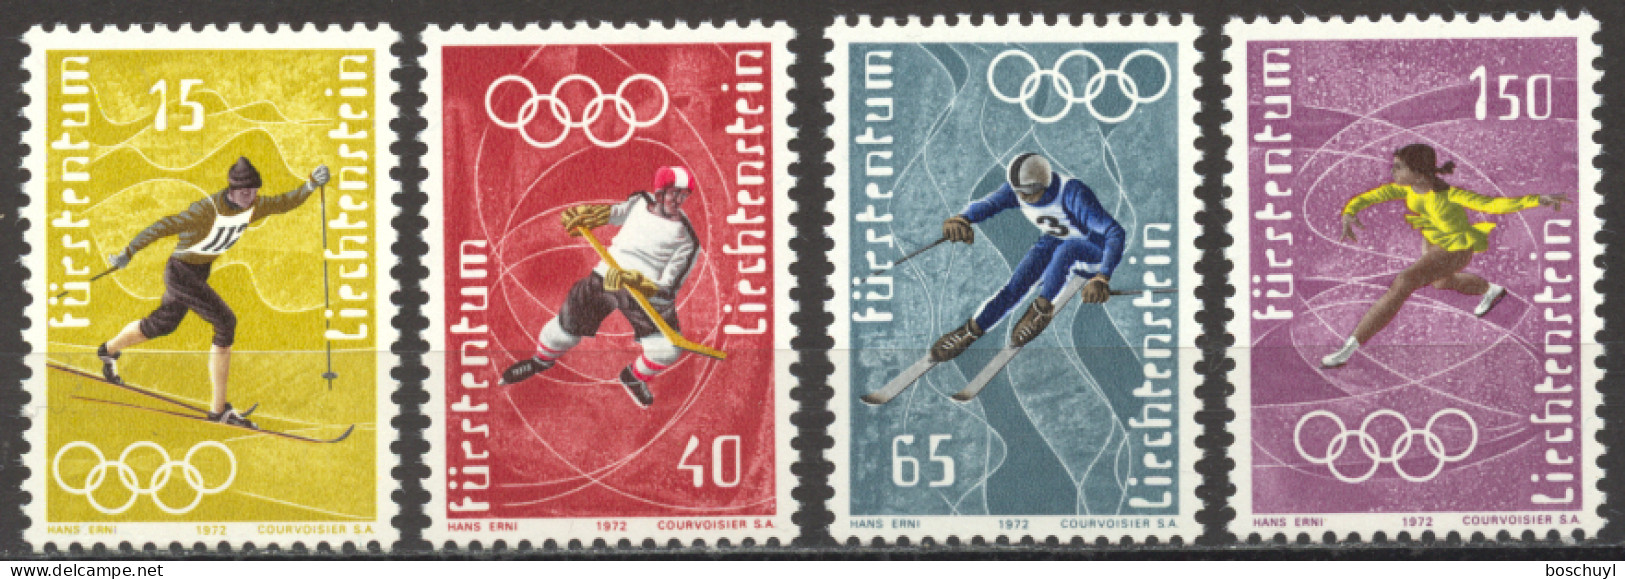 Liechtenstein, 1971, Olympic Winter Games Sapporo, Sports, MNH, Michel 551-554 - Ongebruikt